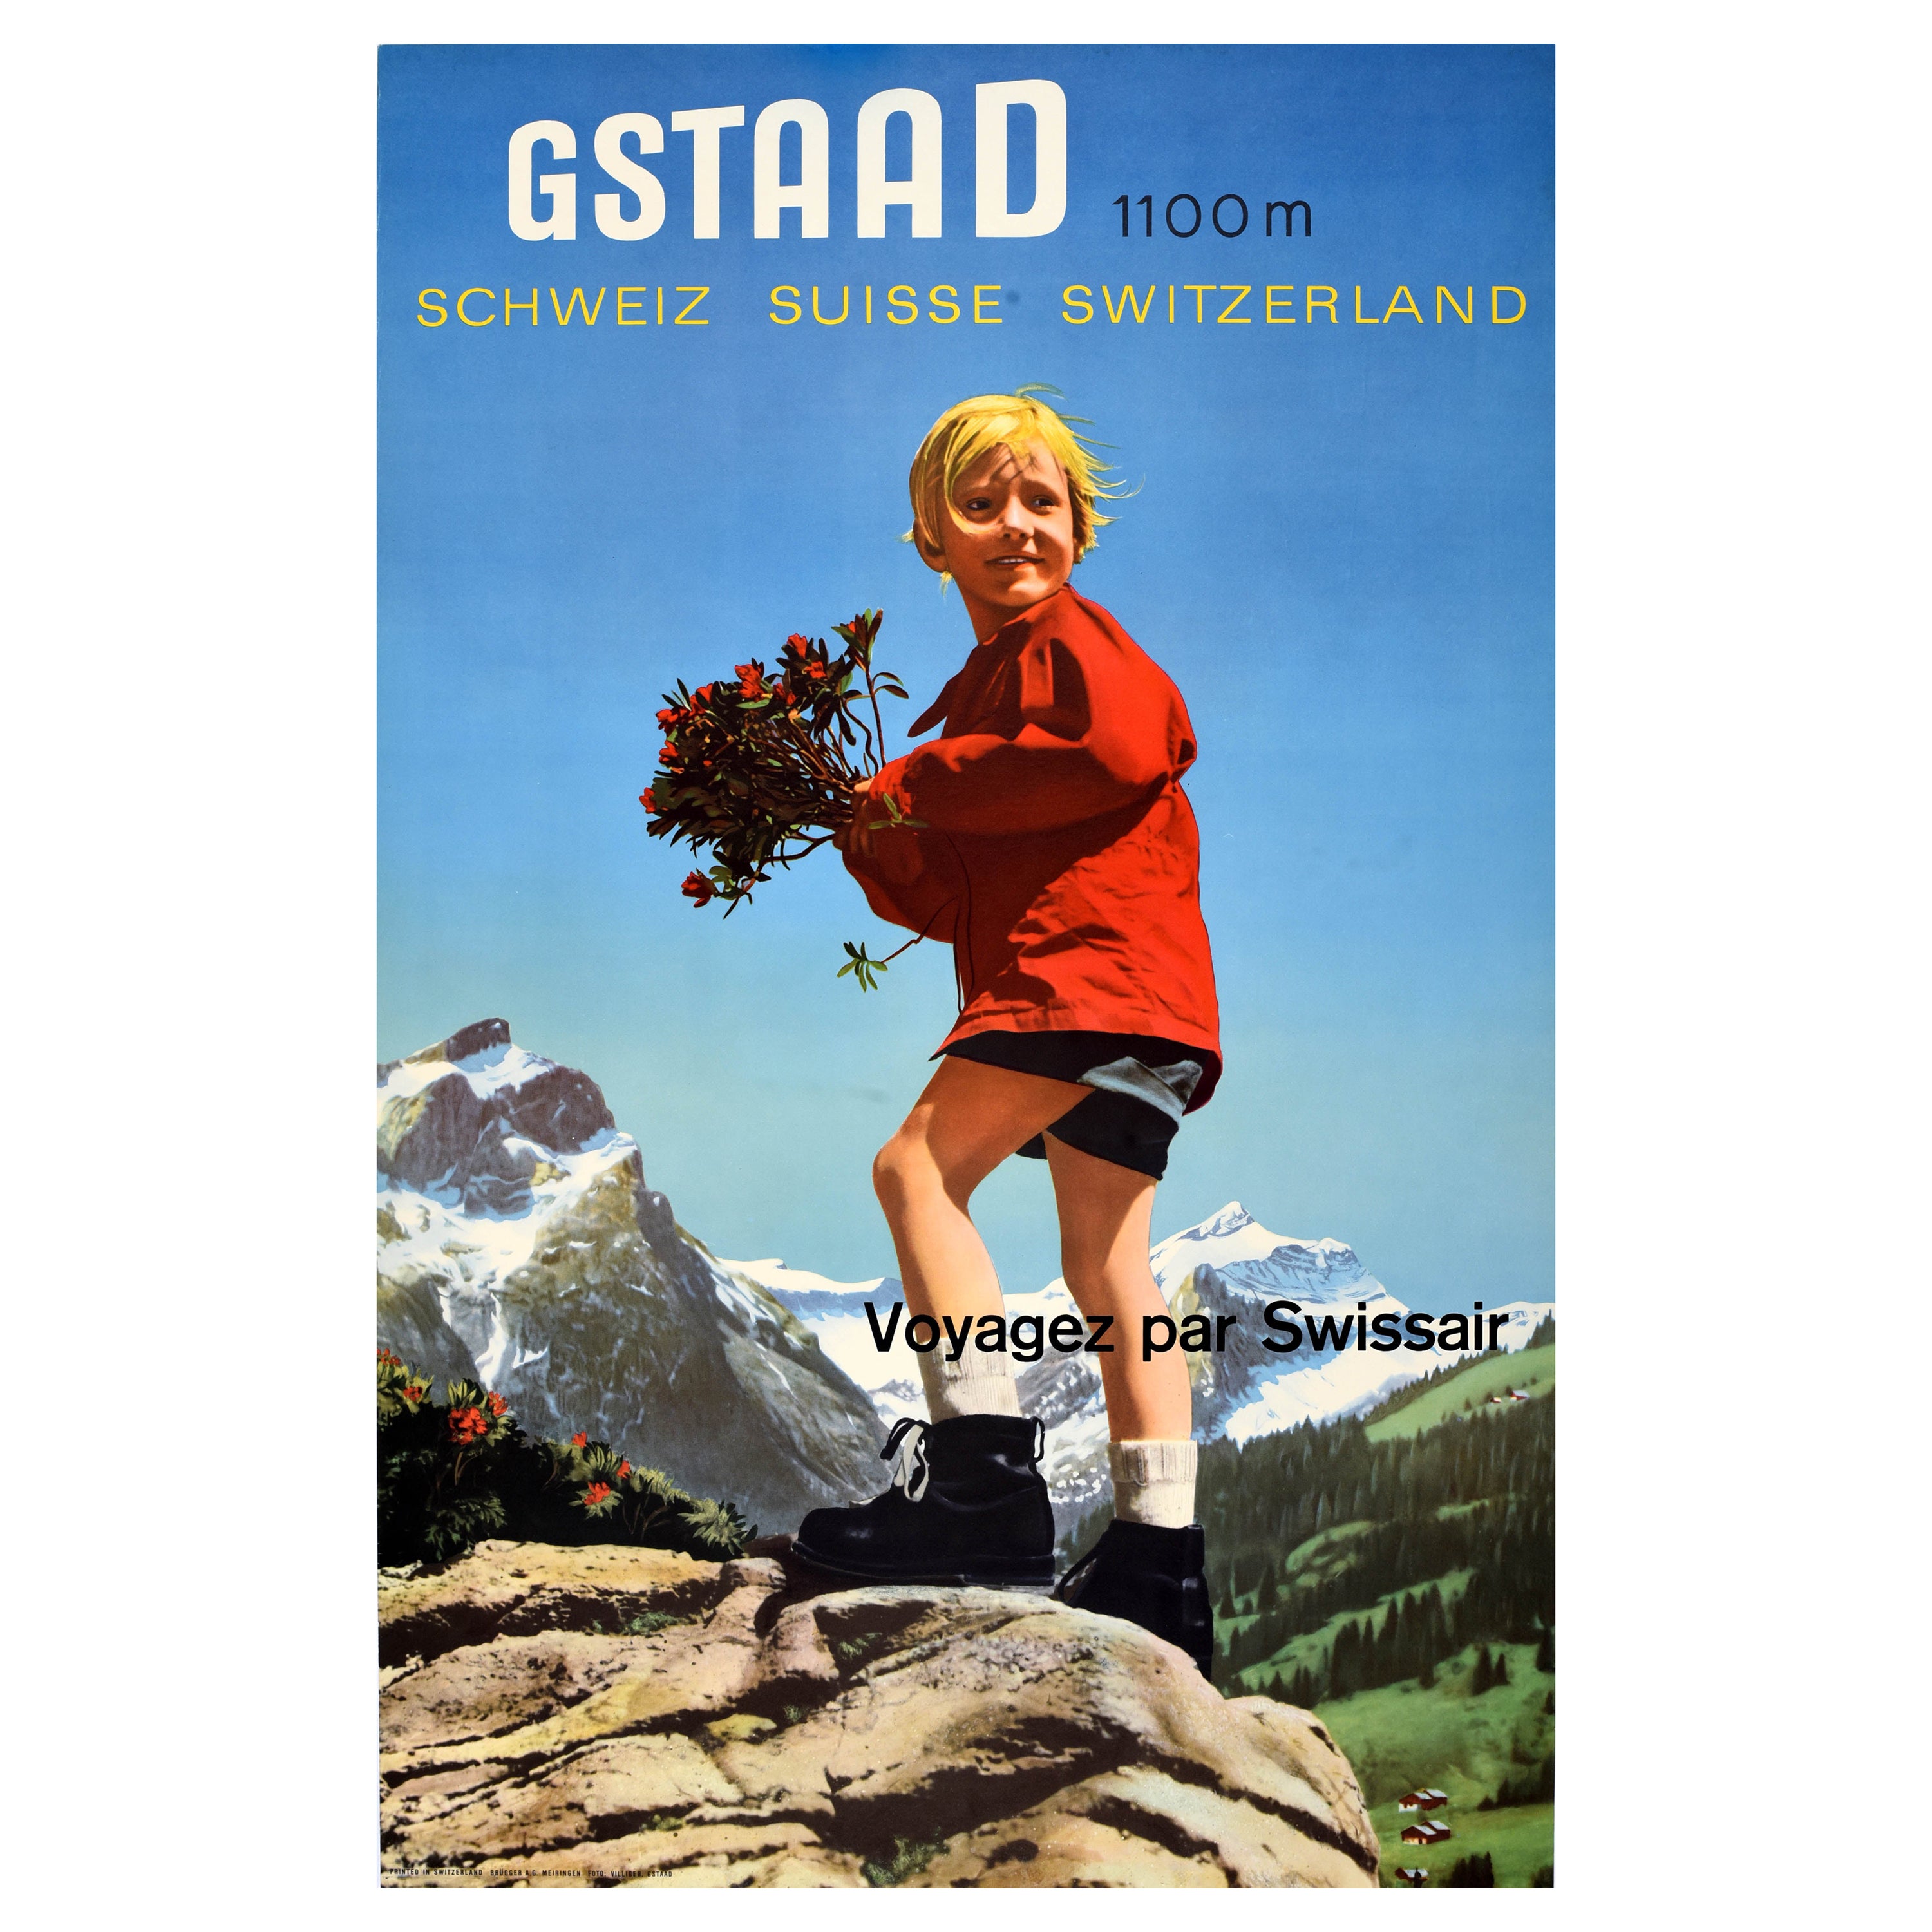 Original Vintage Travel Poster Gstaad Swissair Switzerland Franz Villiger Suisse For Sale